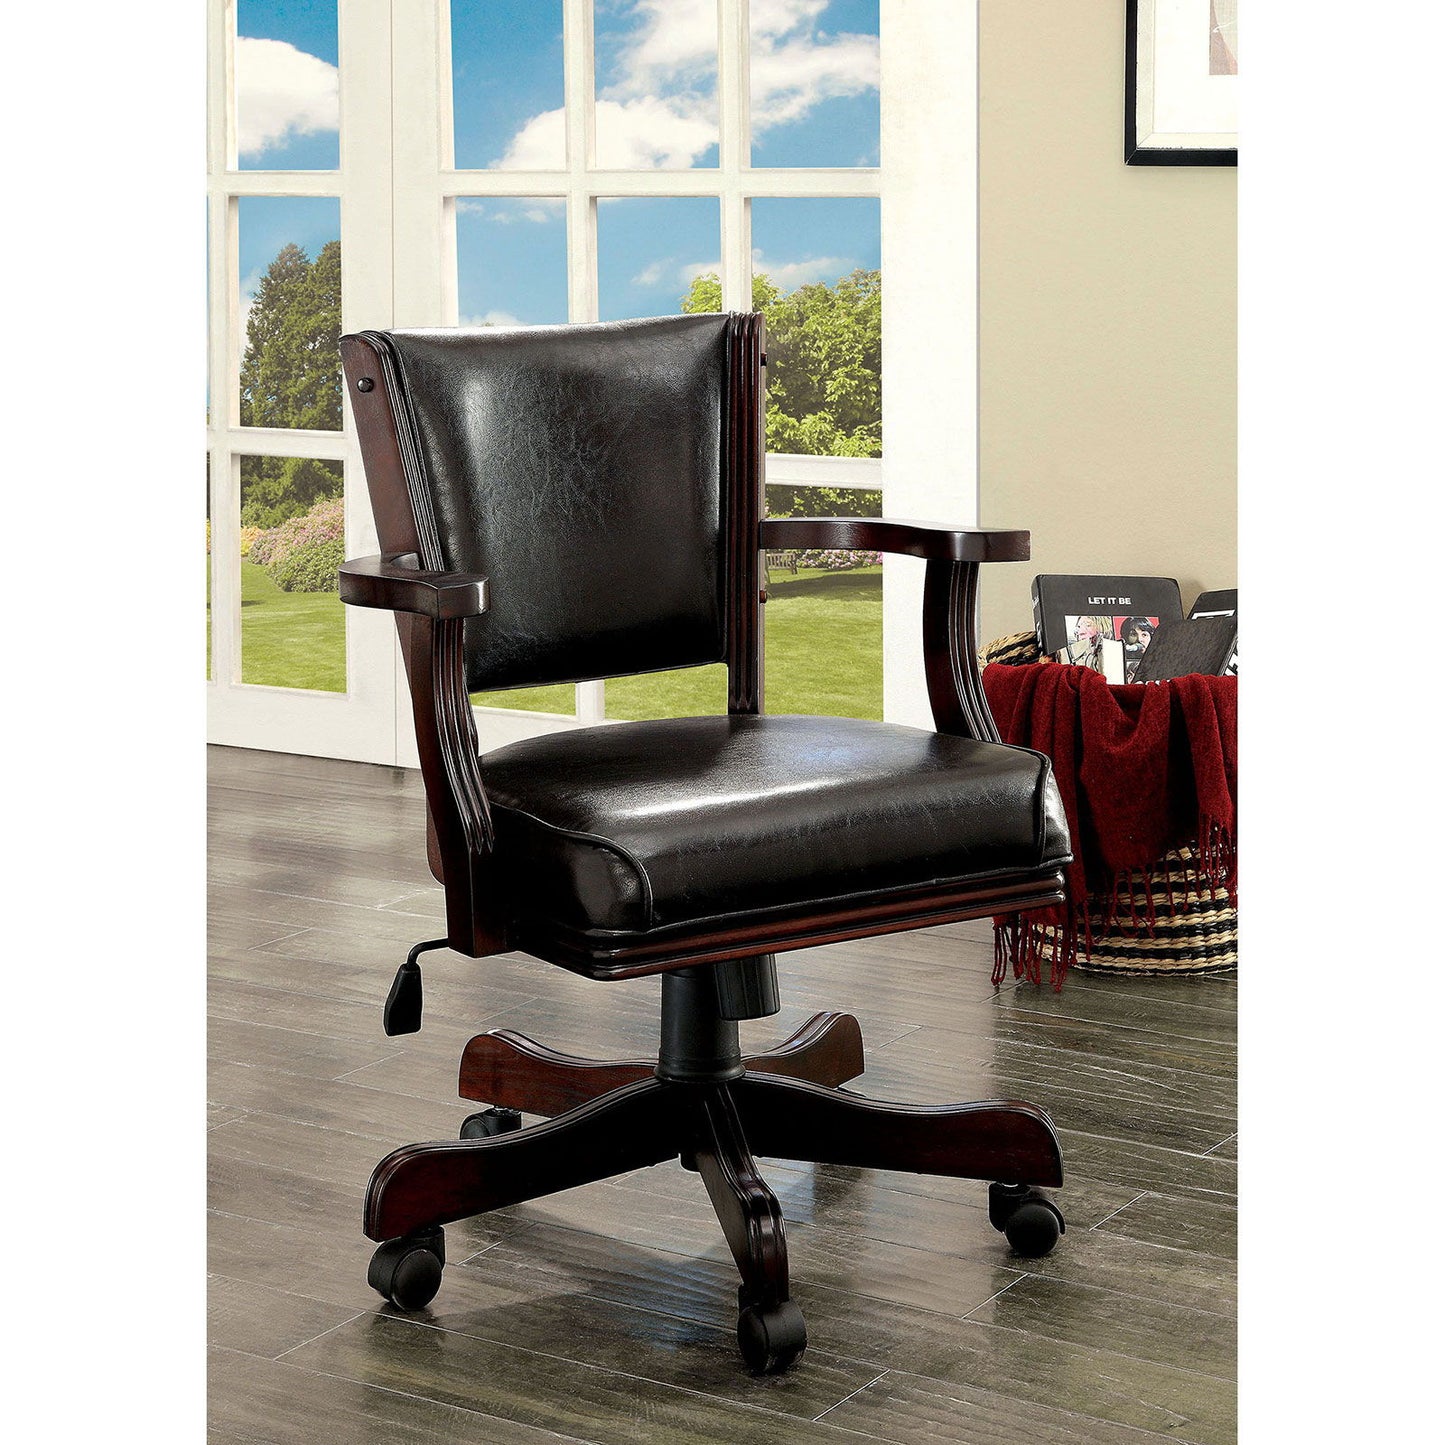 Rowan - Height - Adjustable Arm Chair - Cherry